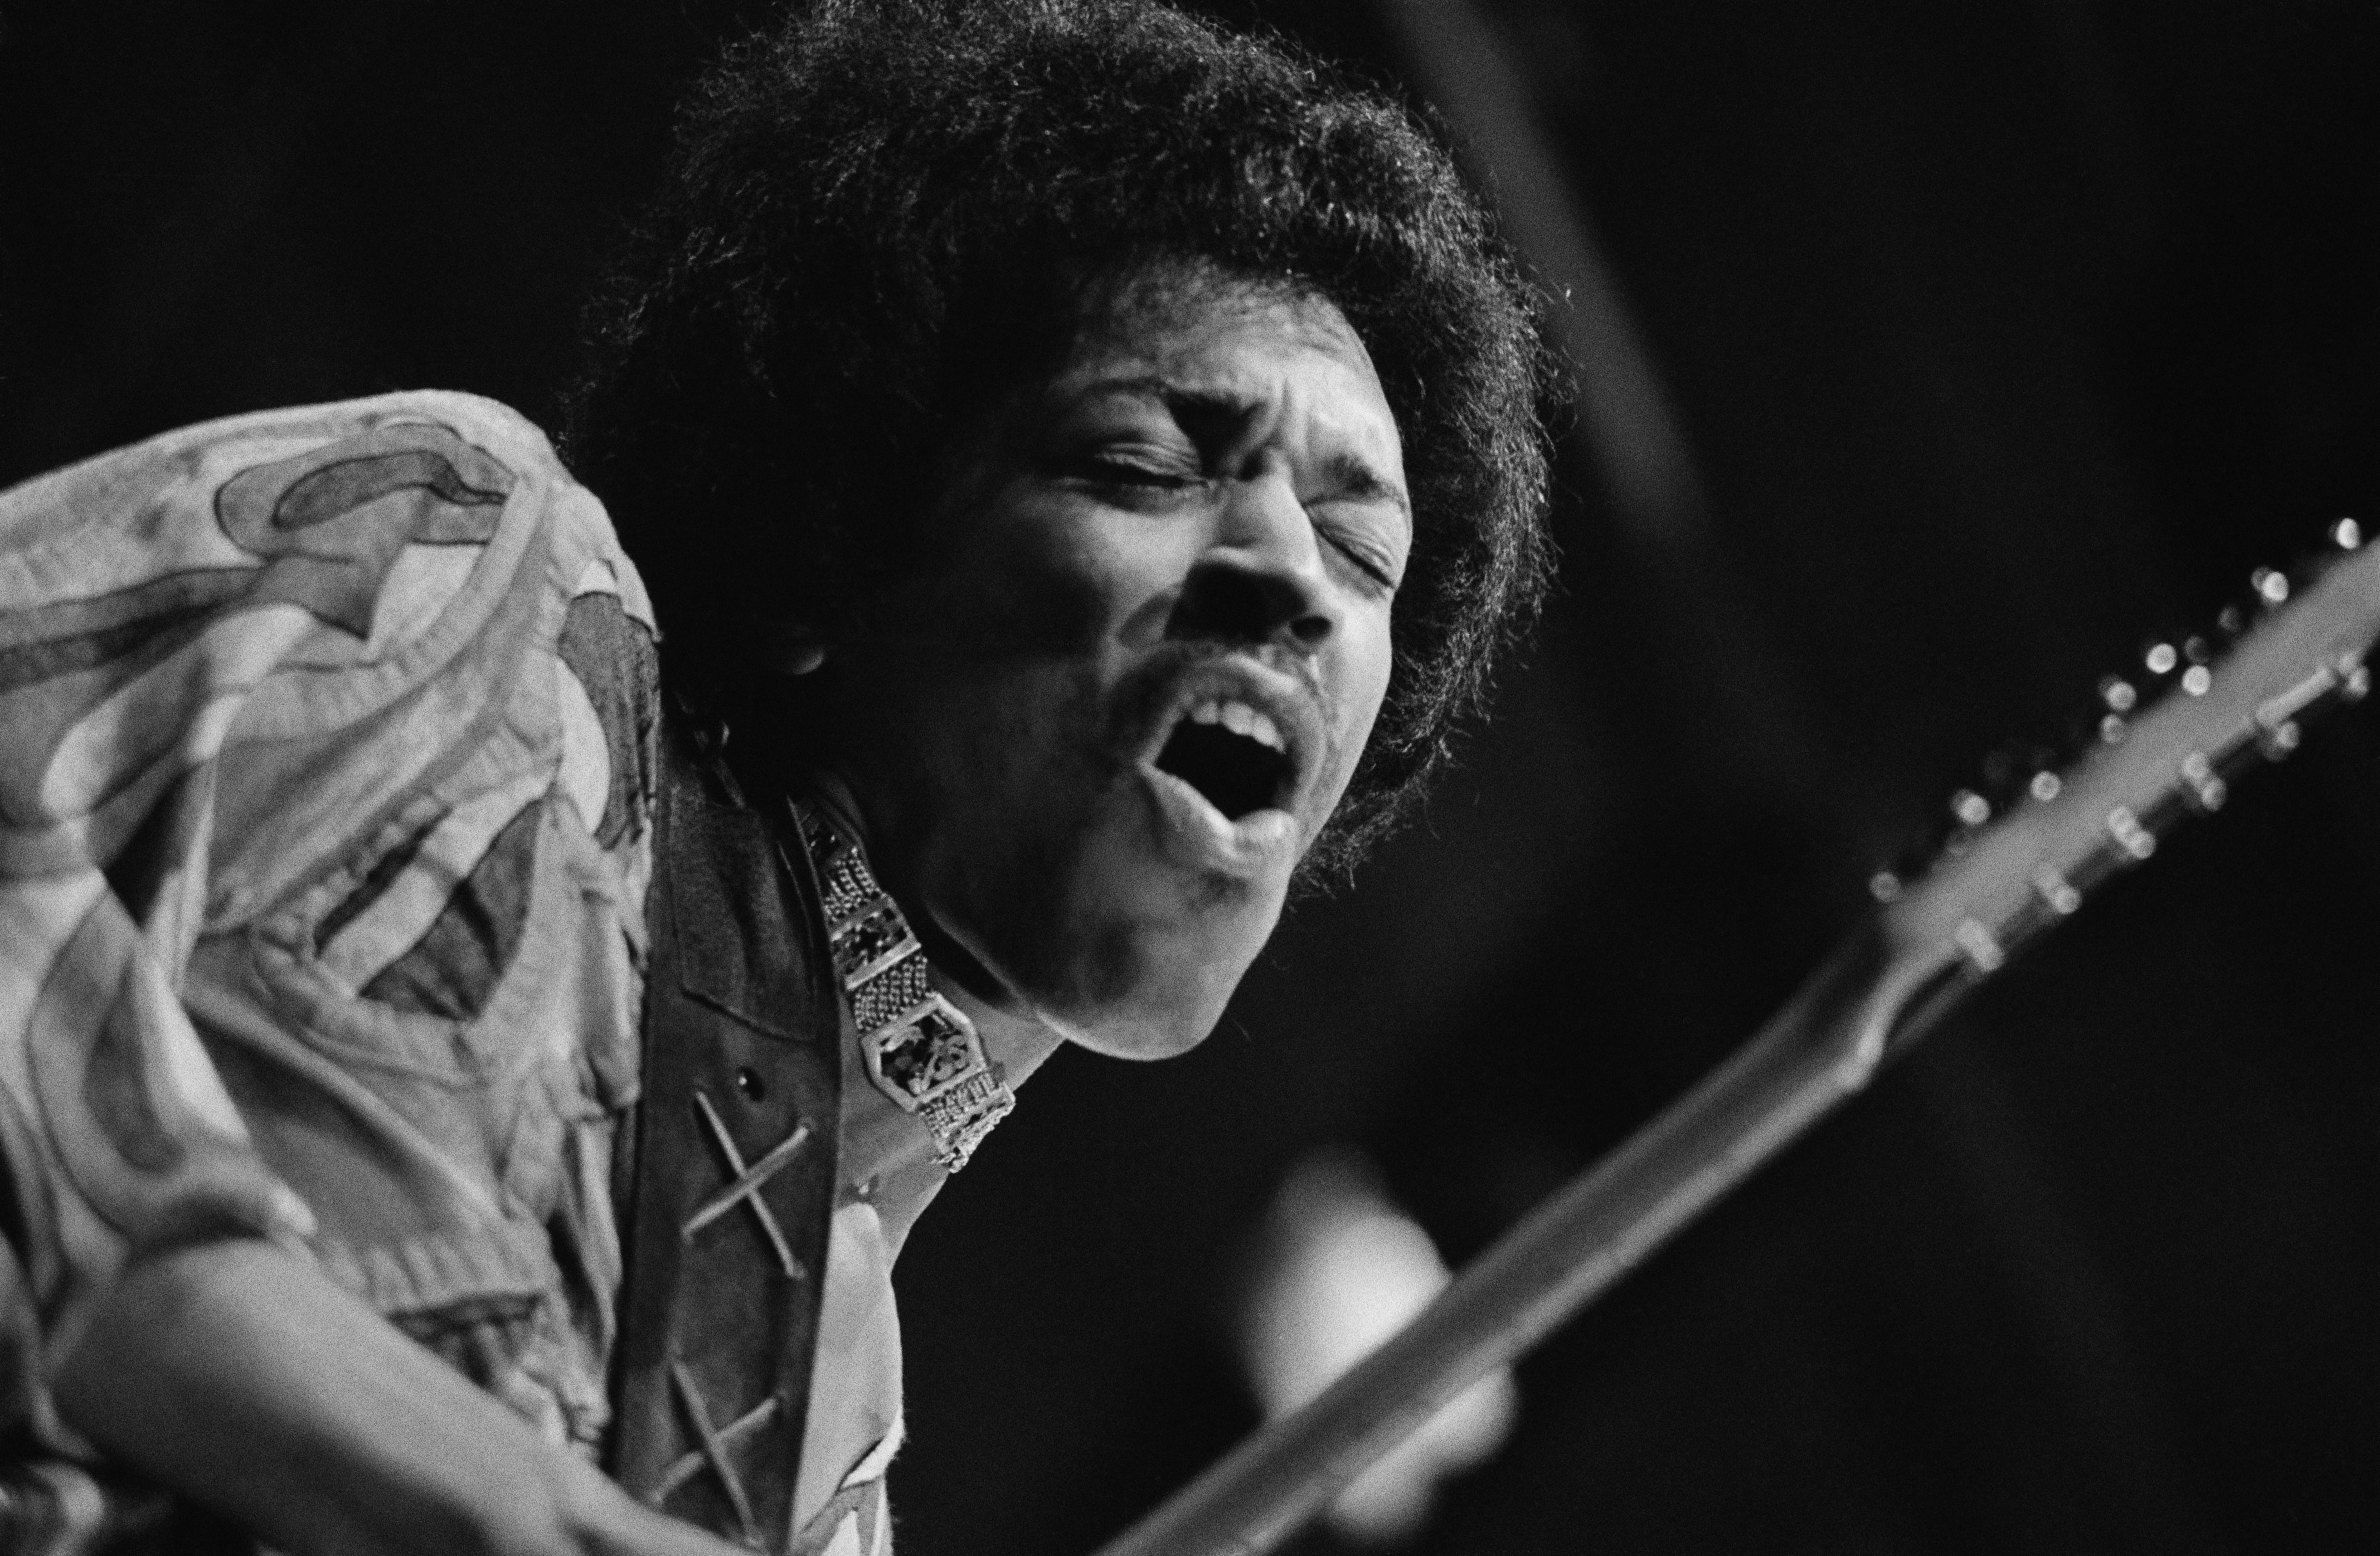 Jimi Hendrix mid-guitar break